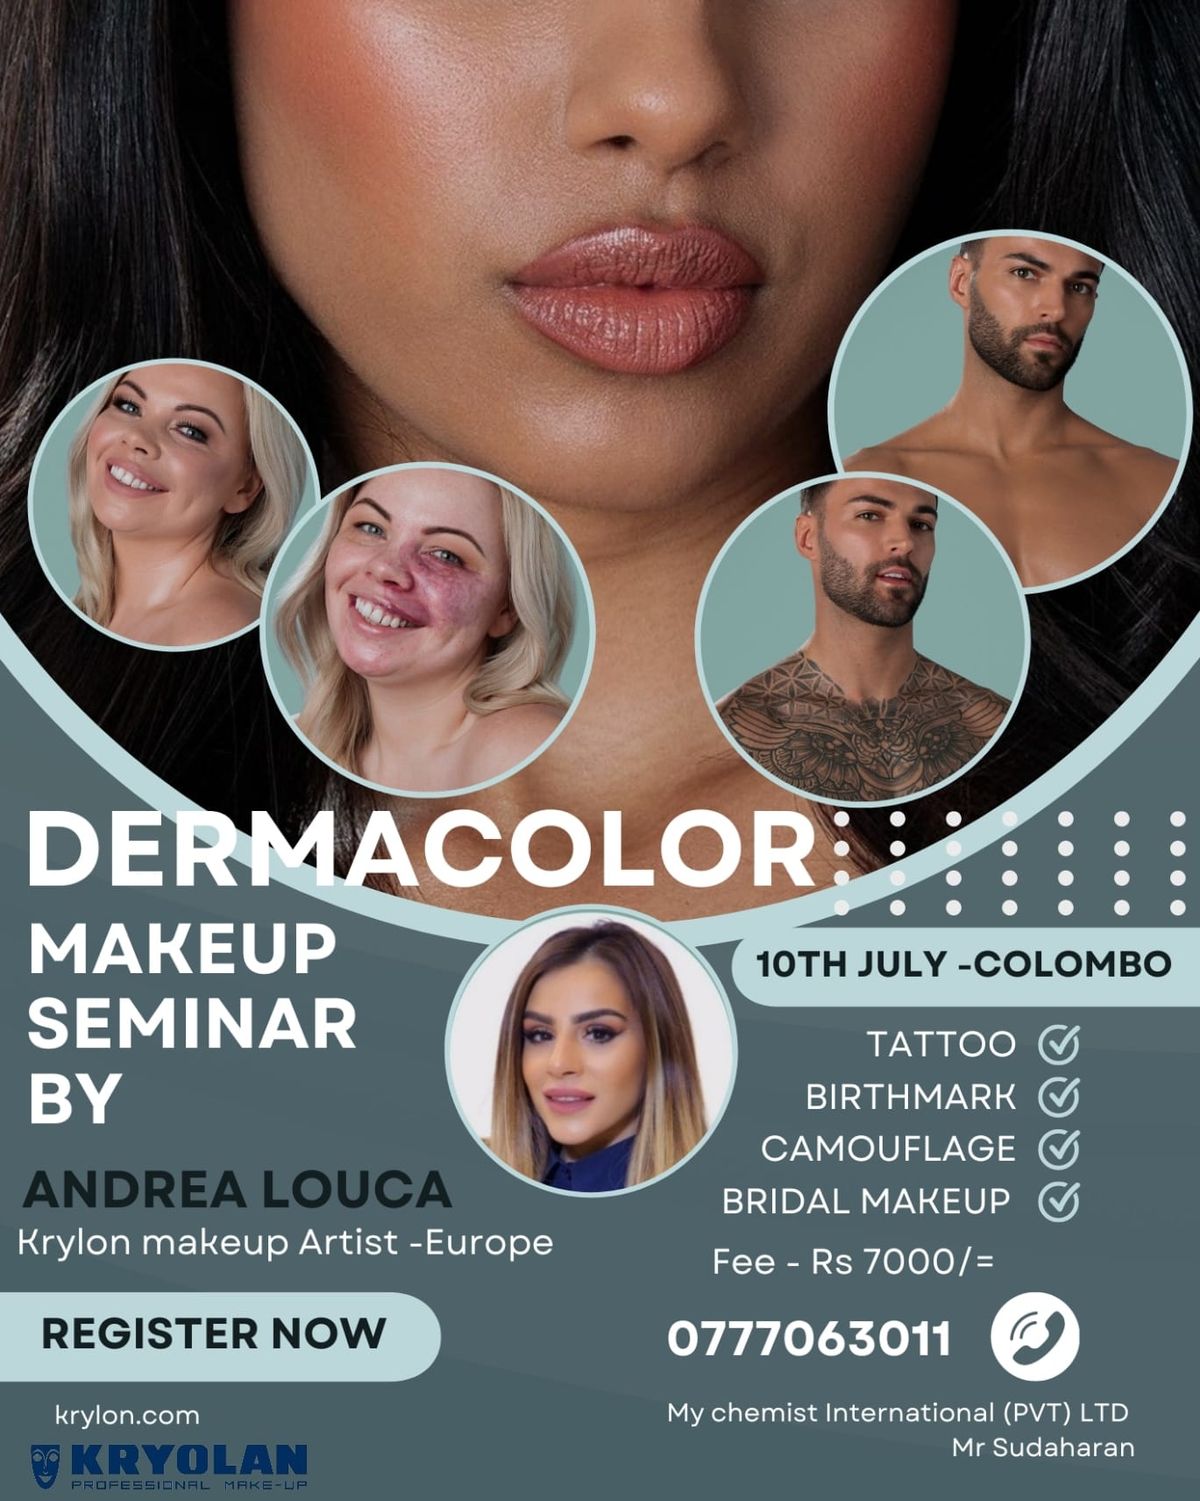 Dermacolor Makeup Seminar By Andrea Locuca